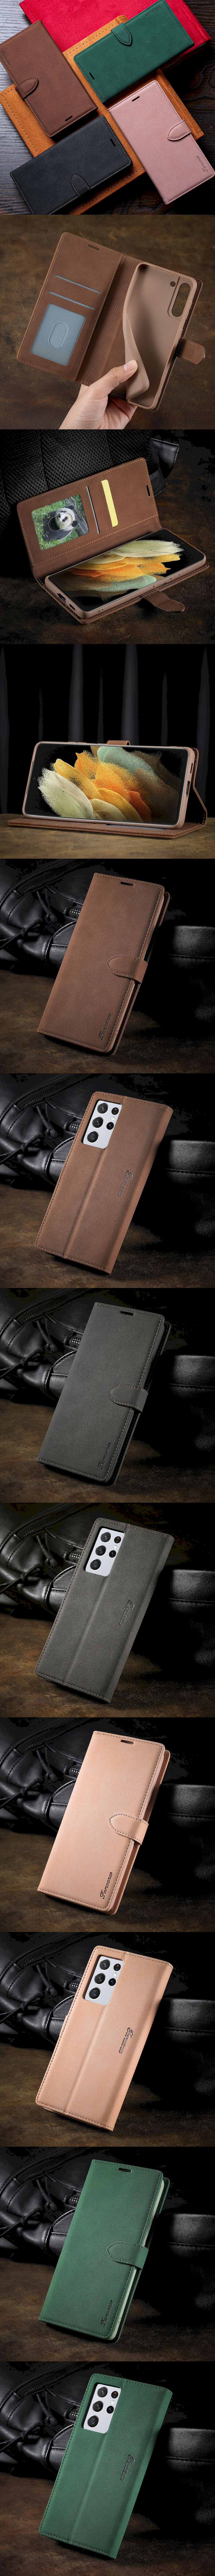 345-Samsung-磨砂仿皮側邊磁扣保護套插卡手機皮套(S21 Ultra)